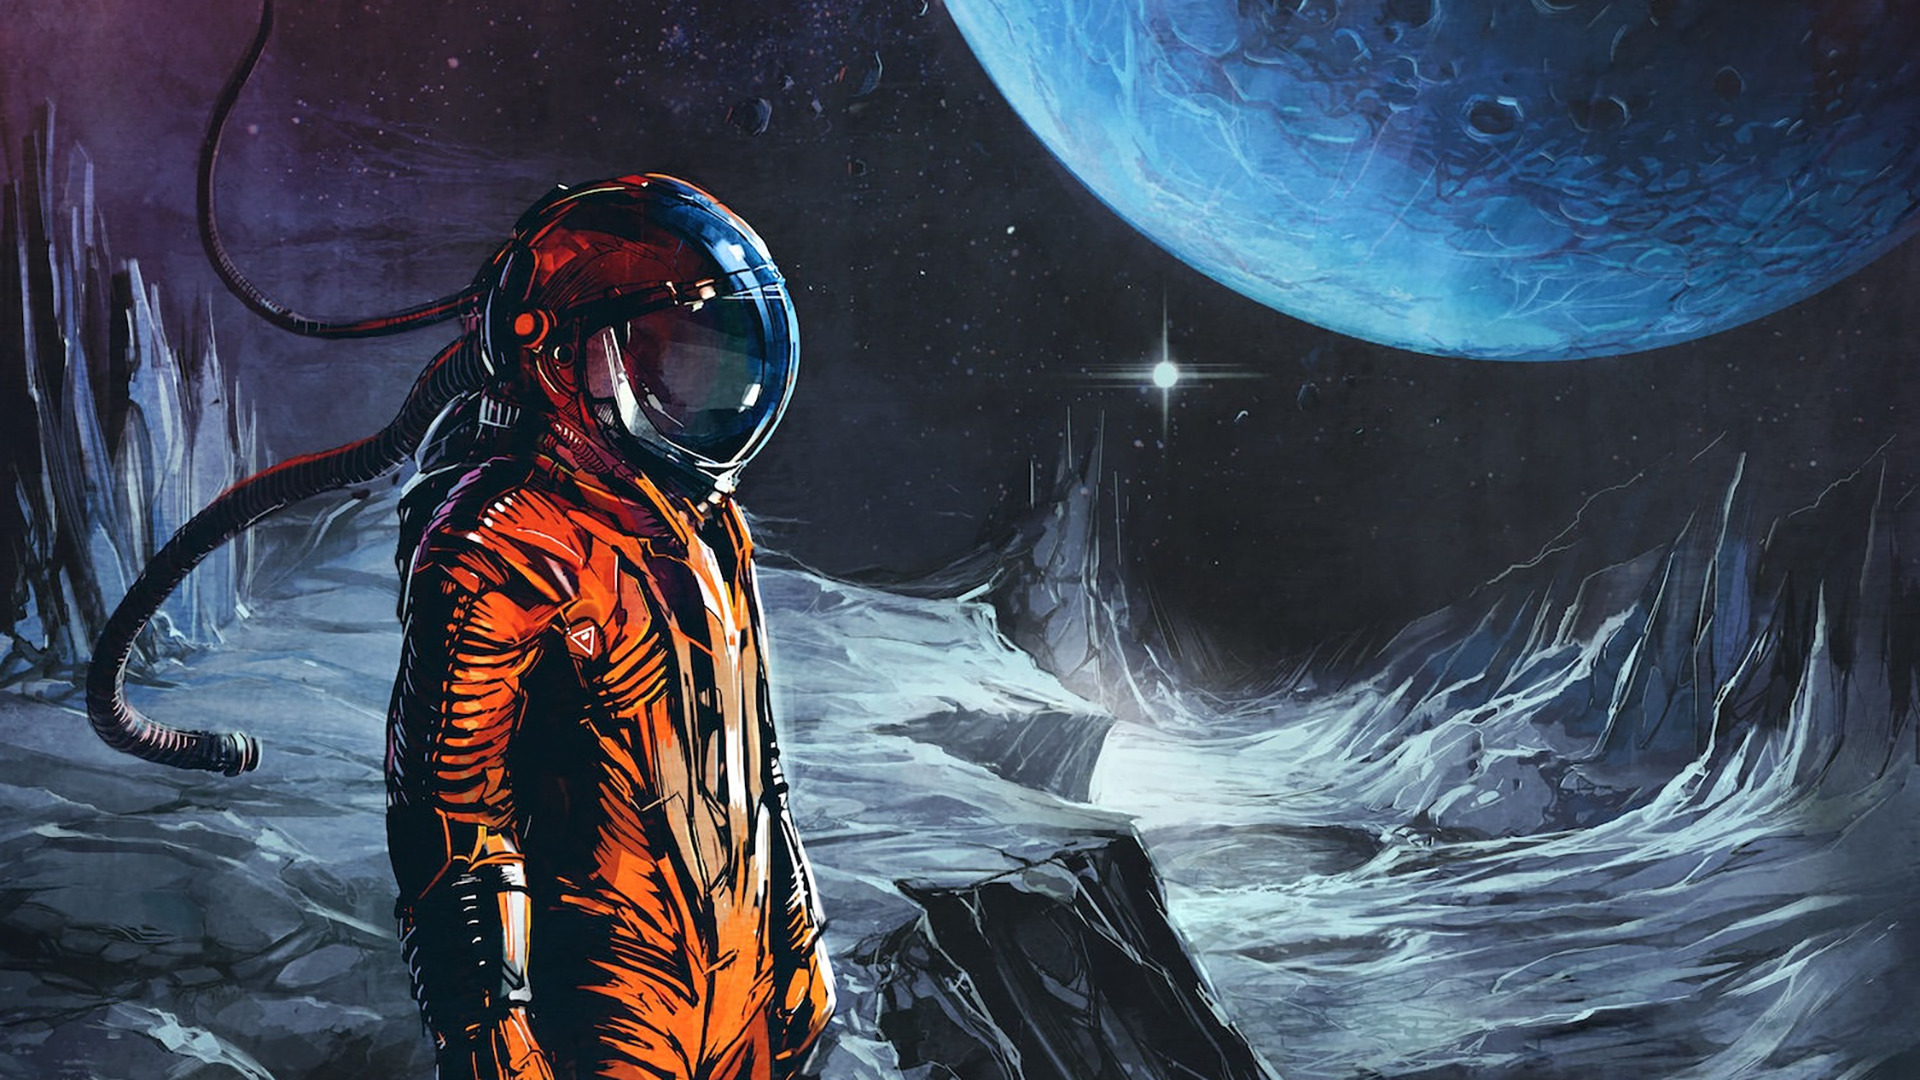 astronaut, Digital art, Fantasy art, Space, Universe, Spacesuit, Planet